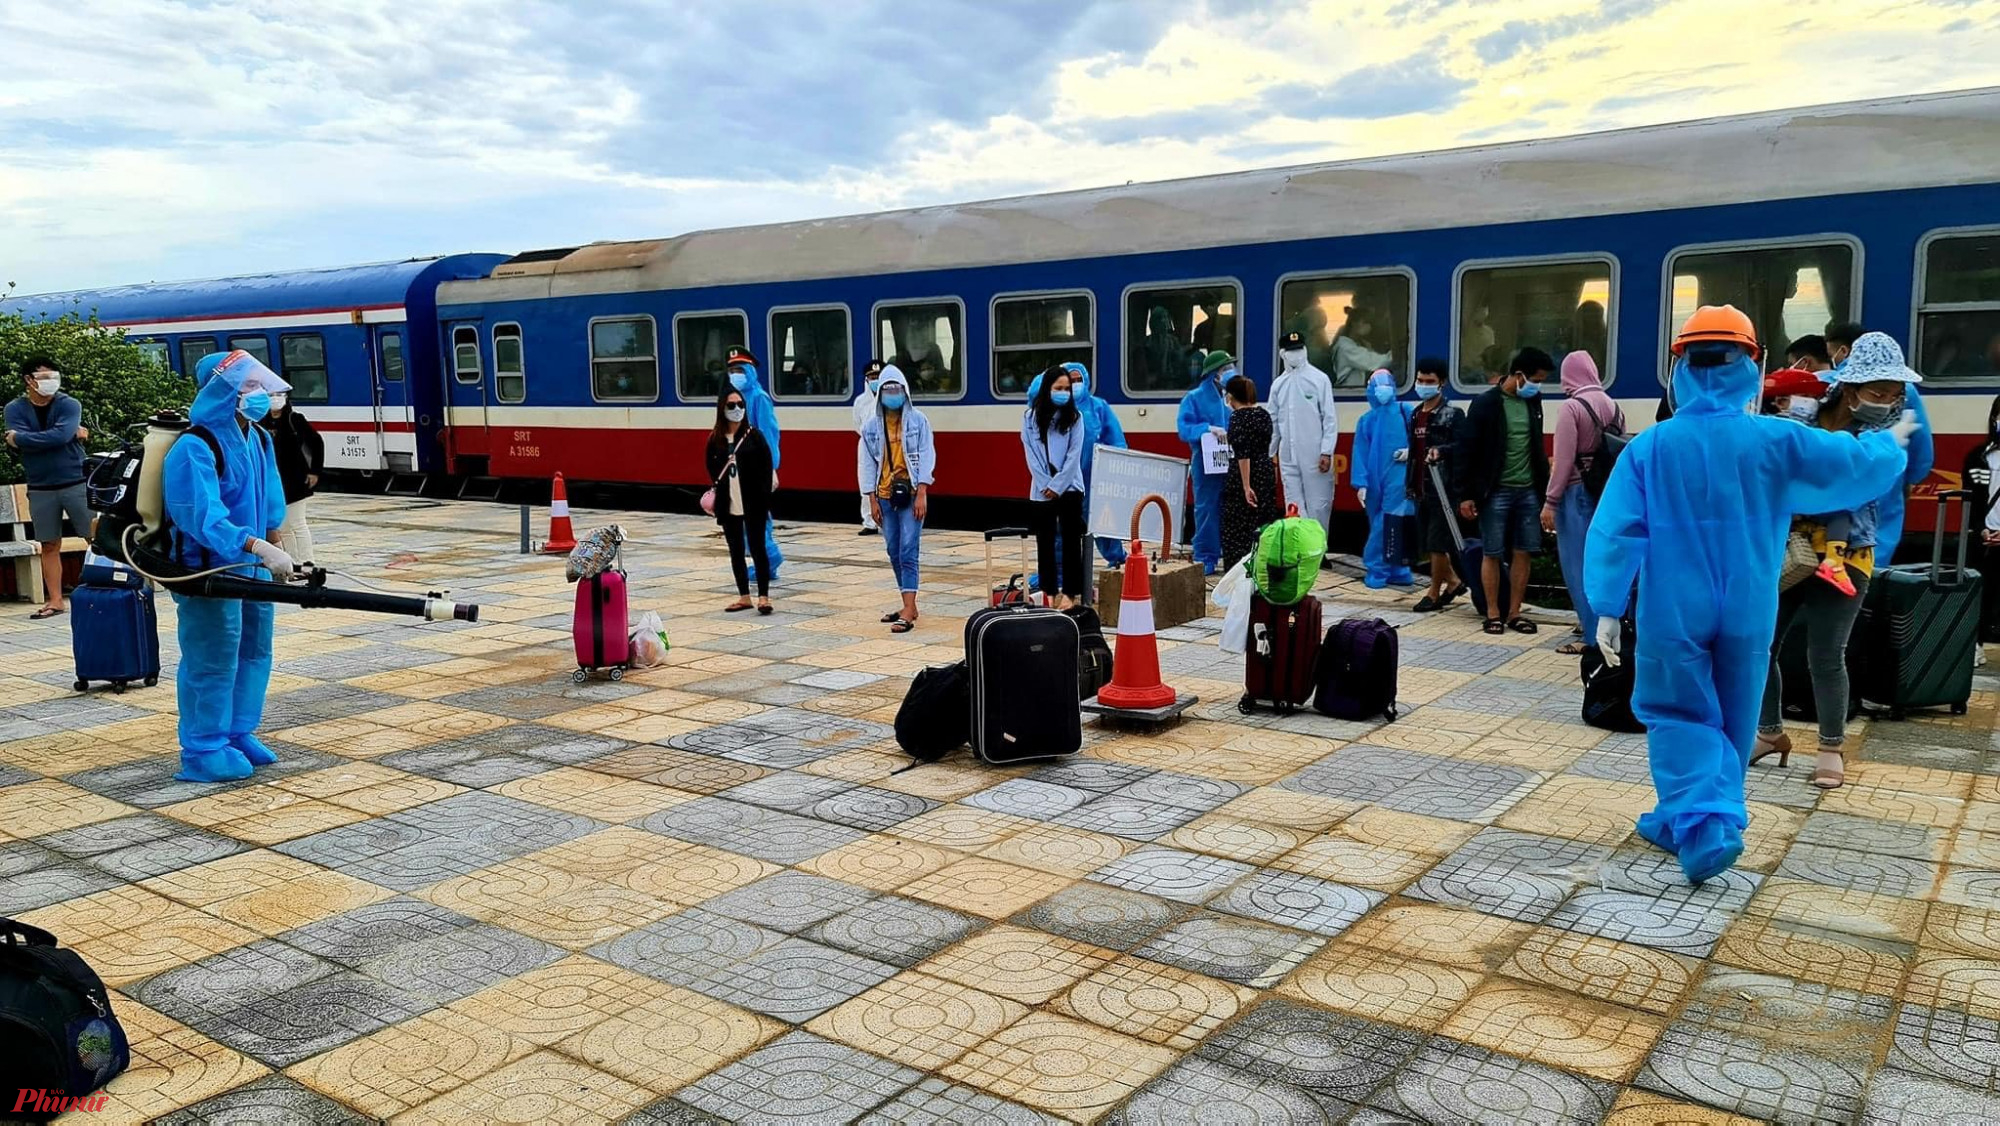 Rạng sáng 26/7, chuyến tàu đặc biệt mang số hiệu SE14 đã đưa 814 người dân Hà Tĩnh đầu tiên sinh sống, làm việc tại TPHCM và các tỉnh phía nam về đến ga Hương Phố (huyện Hương Khê) và ga Yên Trung (huyện Đức Thọ) của tỉnh Hà Tĩnh. 